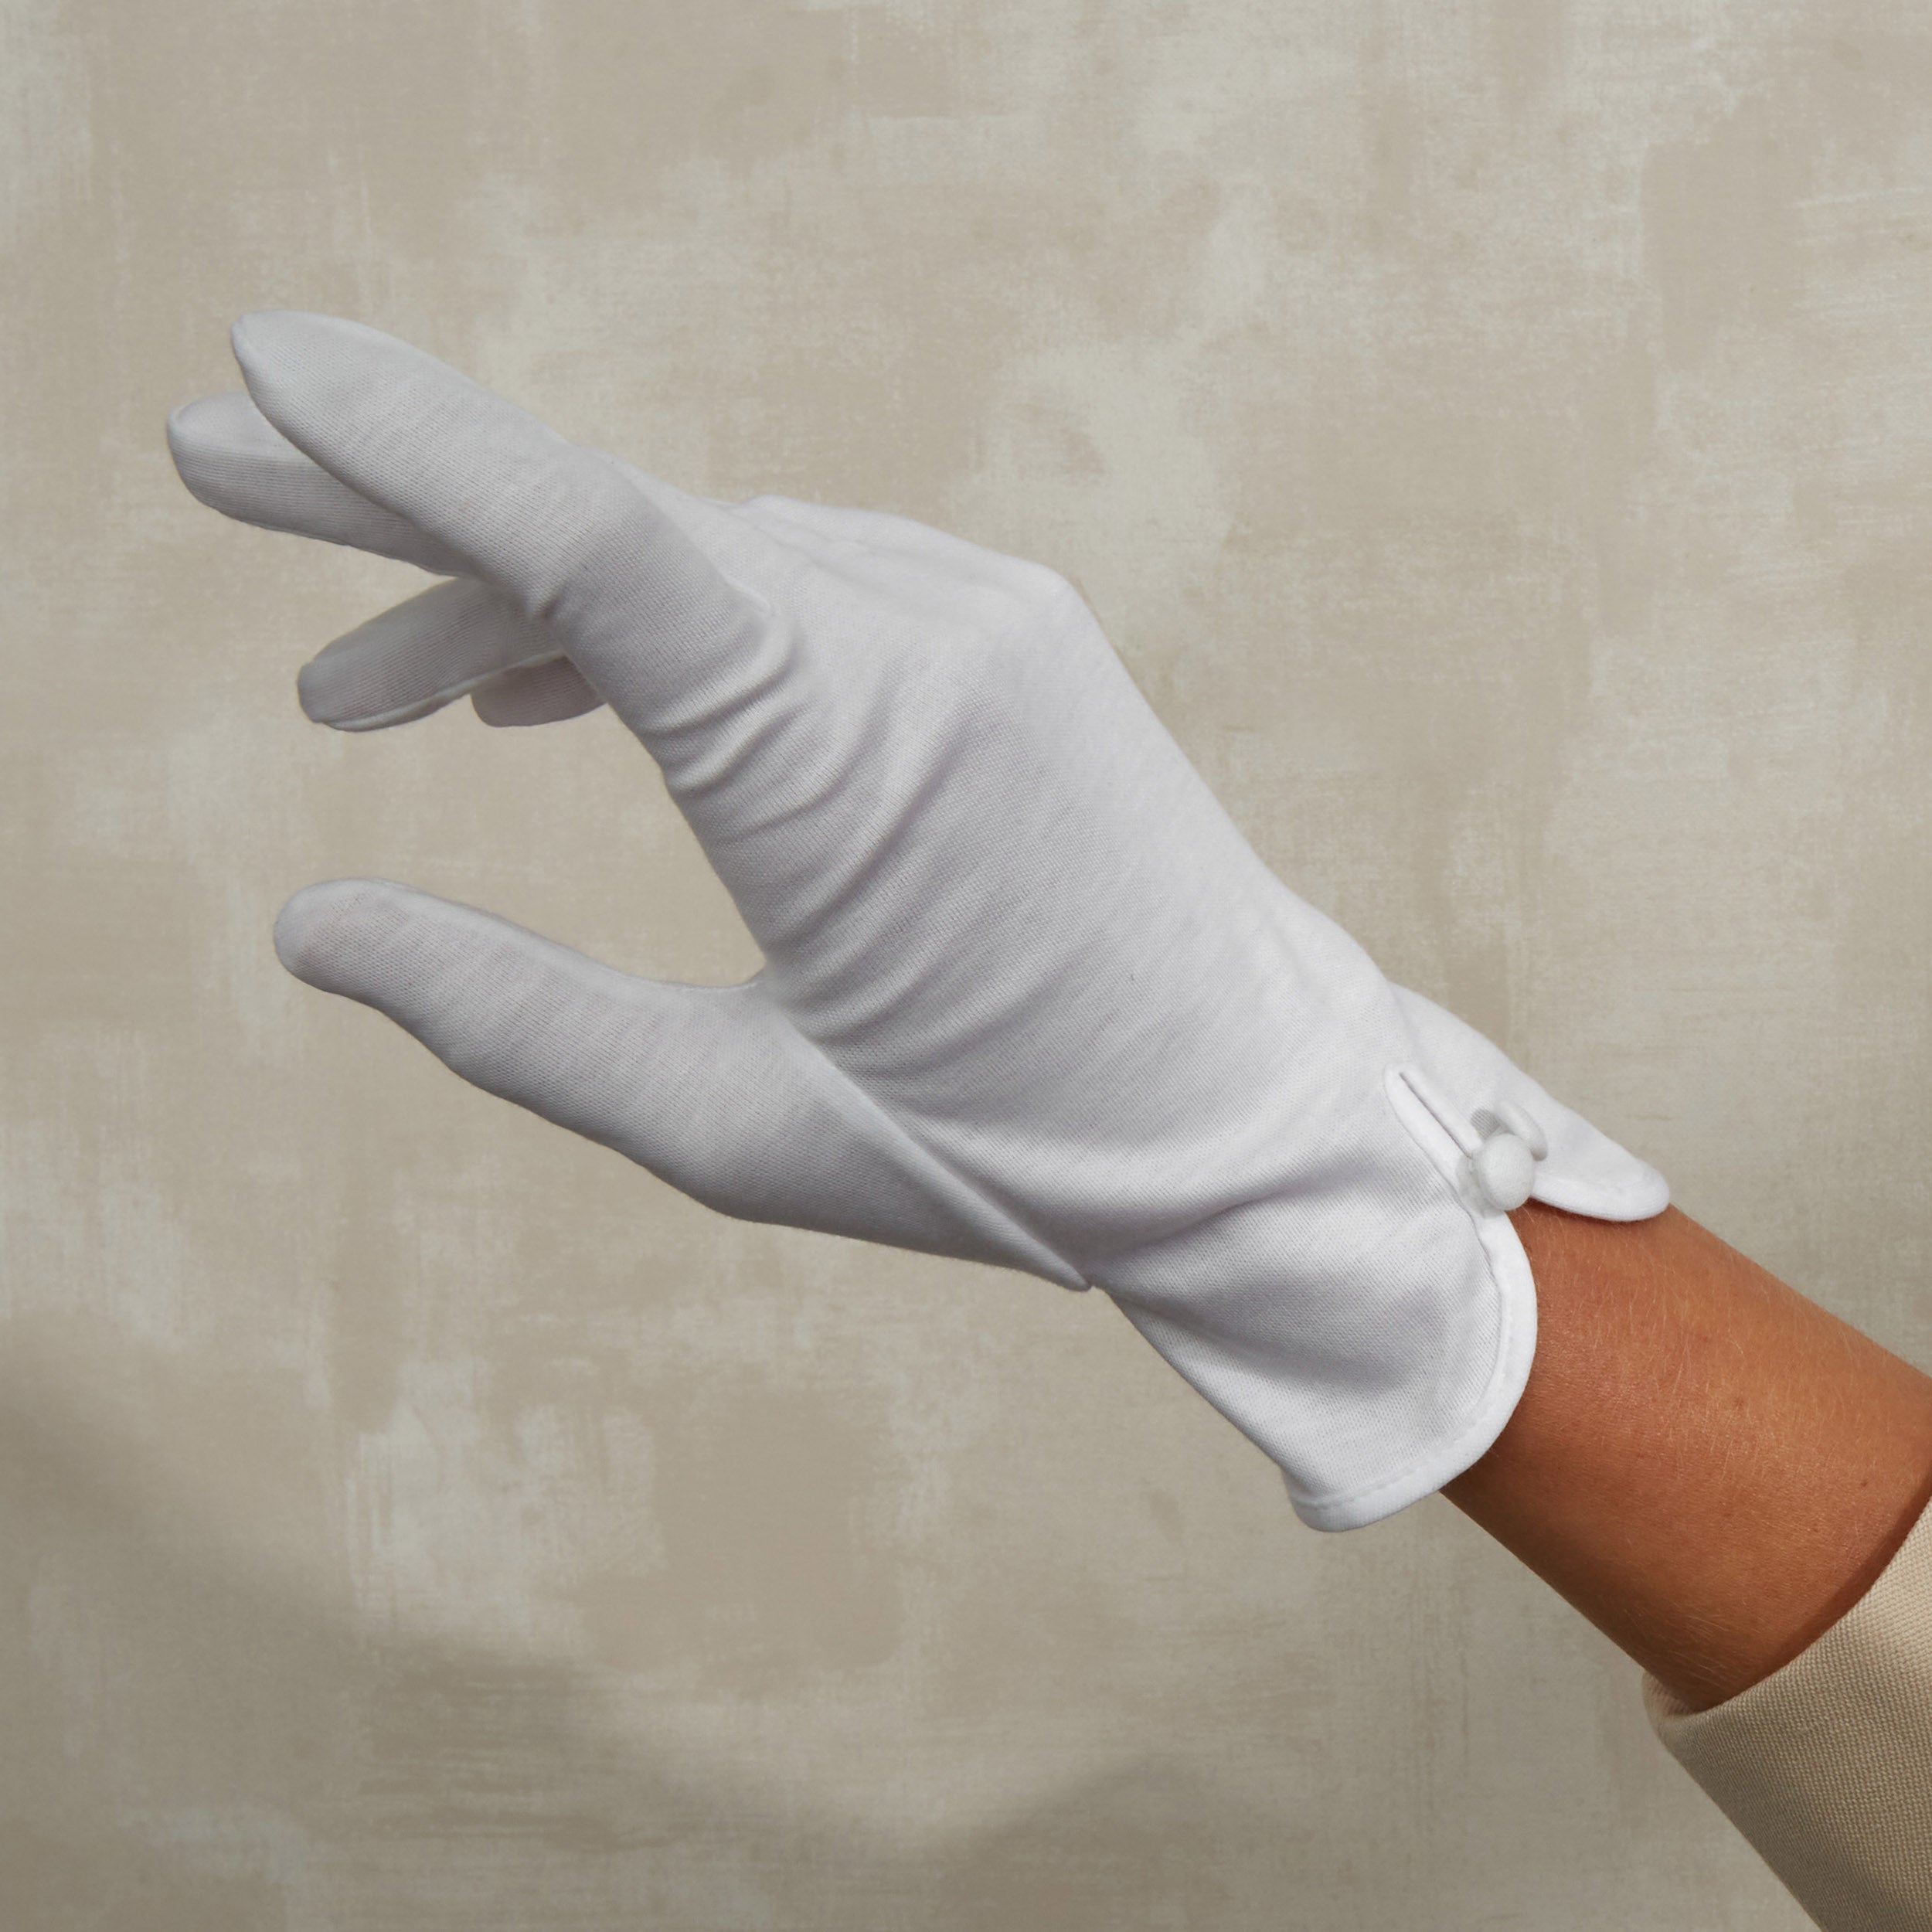 Cornelia James - White Cotton Day Gloves - Isla - Size Large (8½) - Handmade Cotton Gloves by Cornelia James product